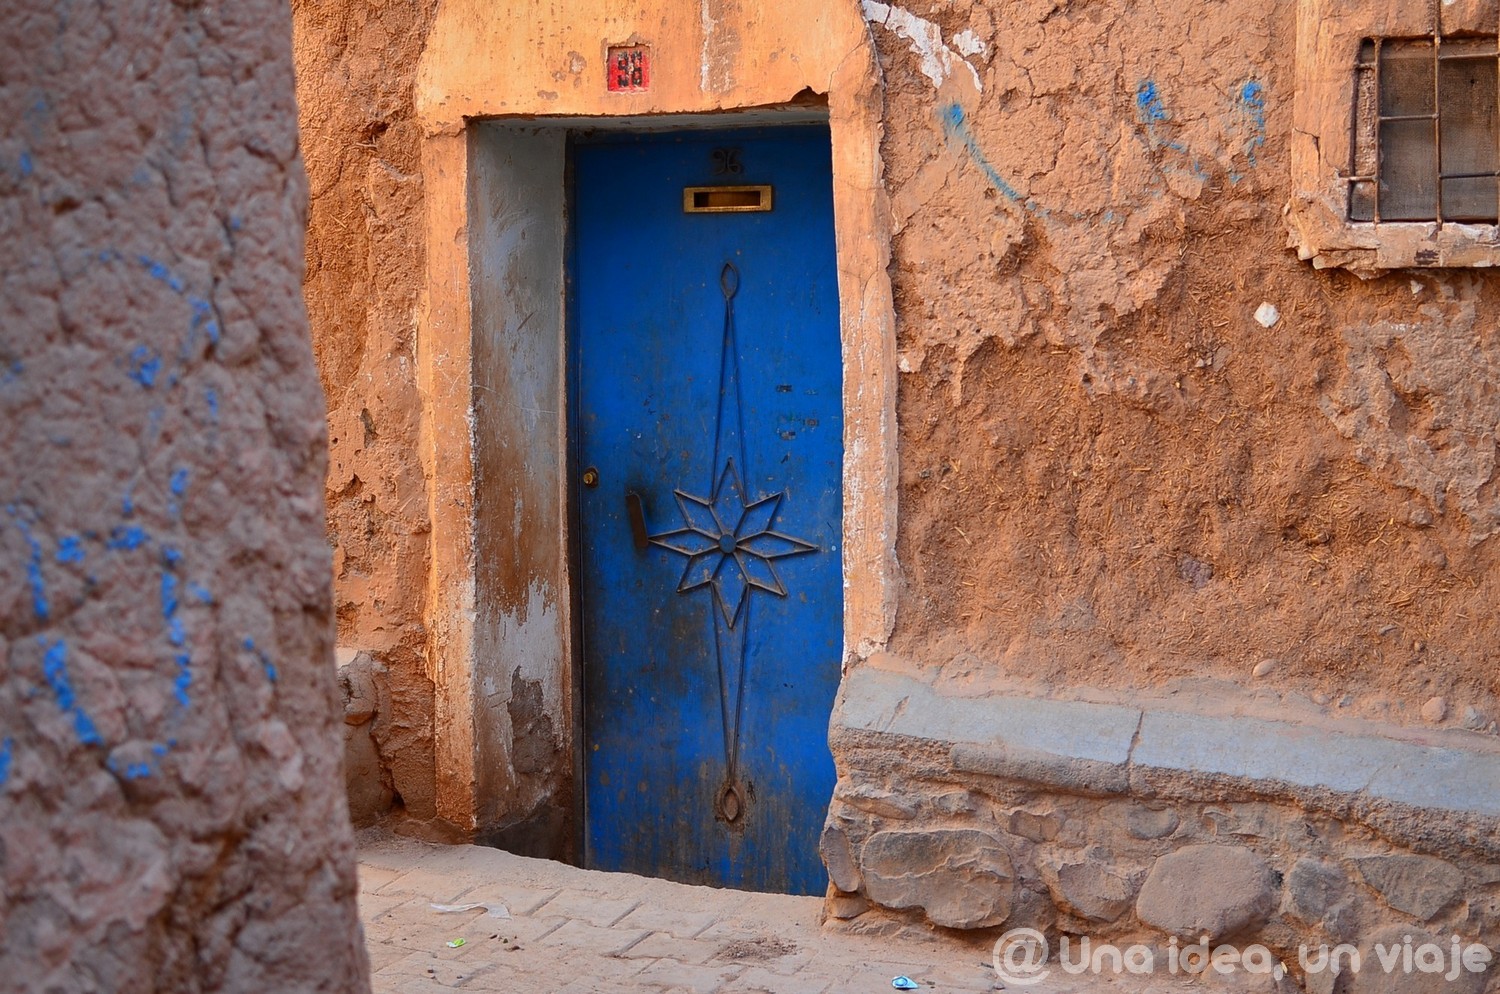 marrakech-marruecos-excursion-ruta-desierto-sahara-unaideaunviaje-11